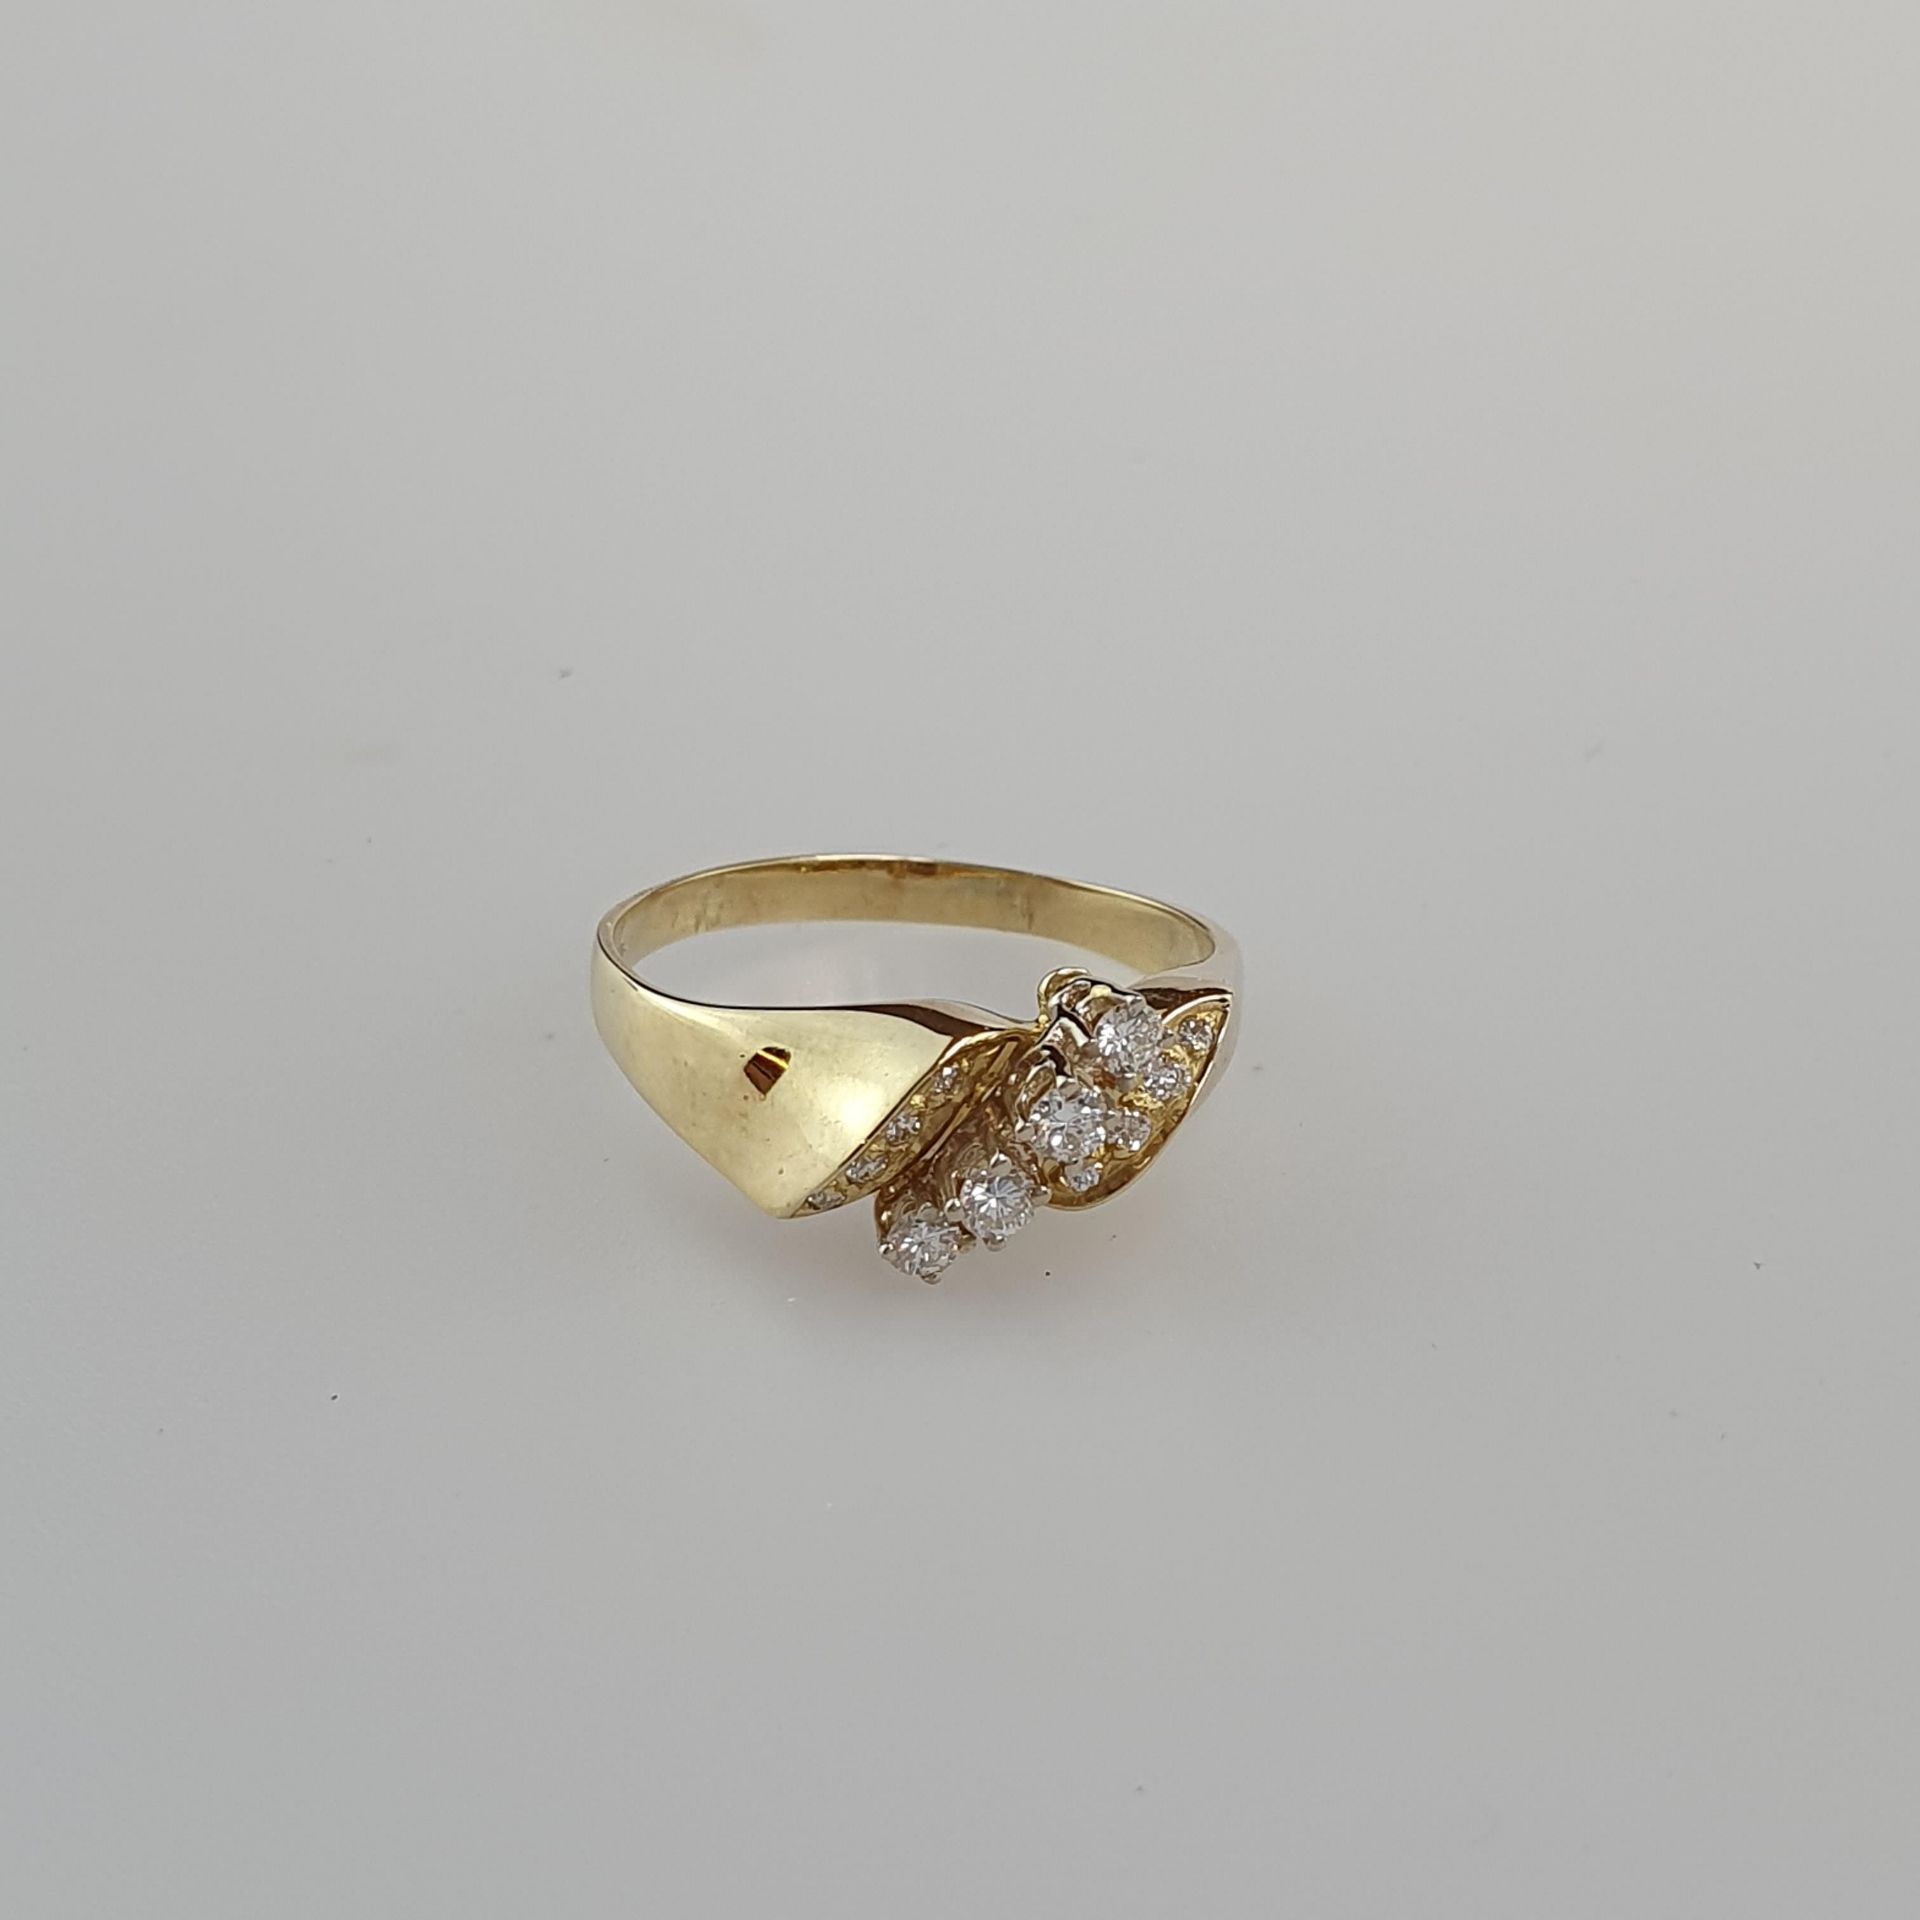 Diamantring - Gelbgold 585/000, gestempelt, Ringkopf diagonal besetzt mit 4 Diamanten von zusammen